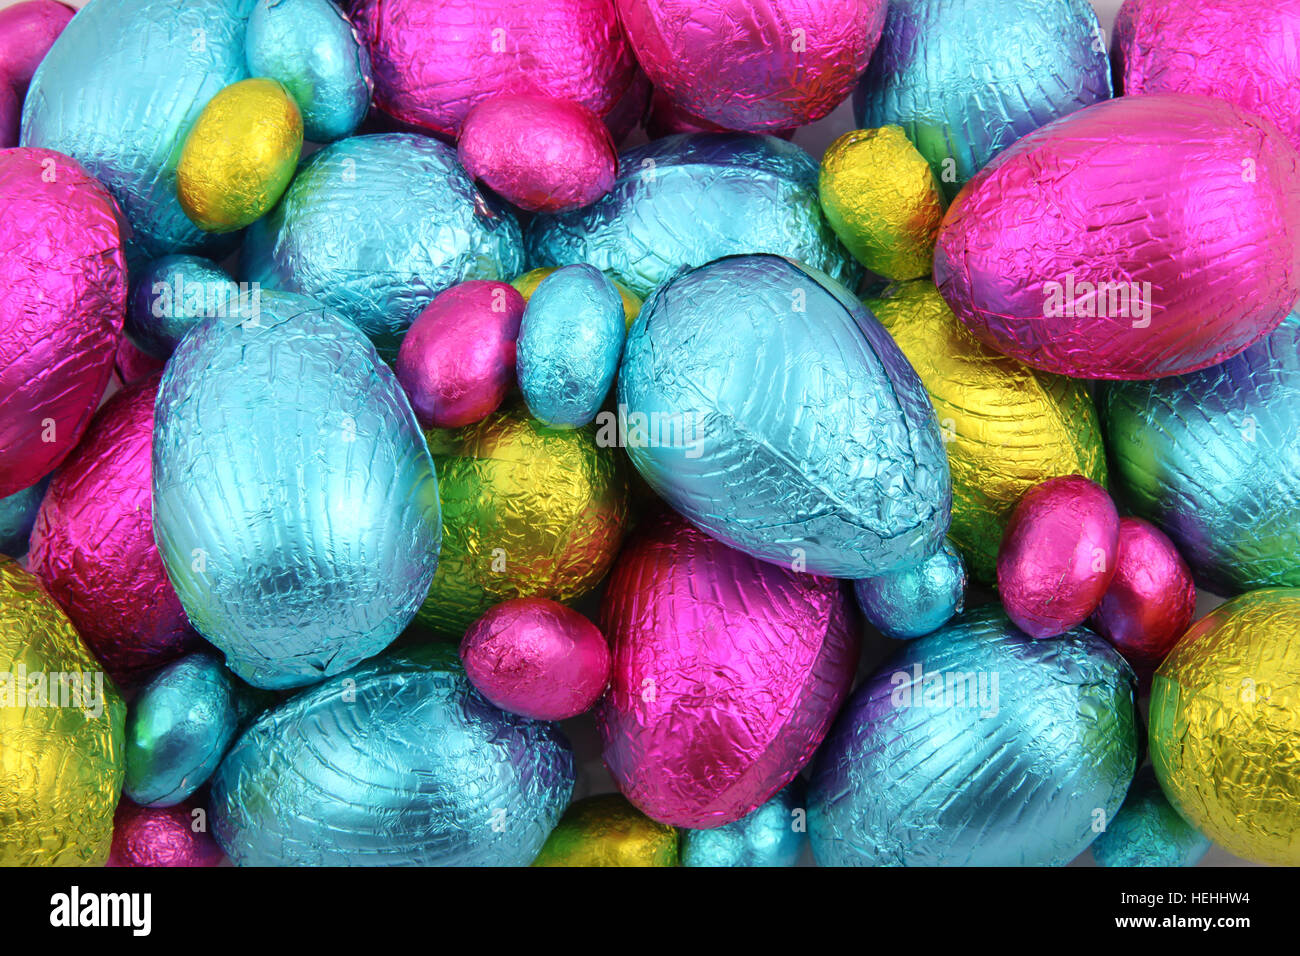 Haufen von Folie eingewickelt Schokoladeneier in rosa, blau & lindgrün. Stockfoto